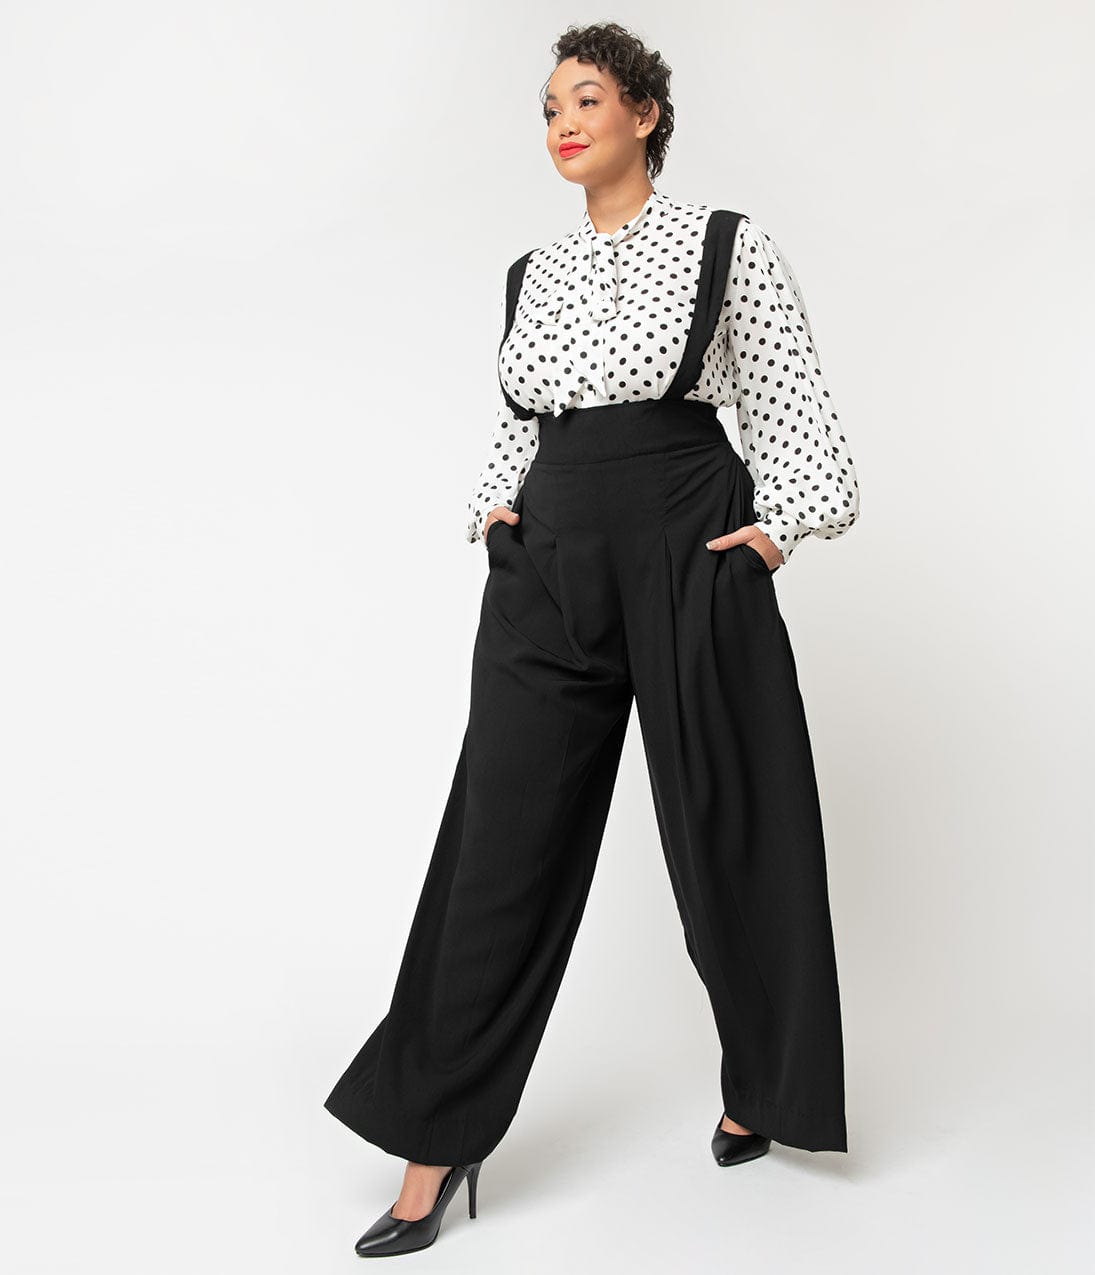 https://www.unique-vintage.com/cdn/shop/products/unique-vintage-plus-size-black-wide-leg-rochelle-suspender-pants-944577.jpg?v=1703099982